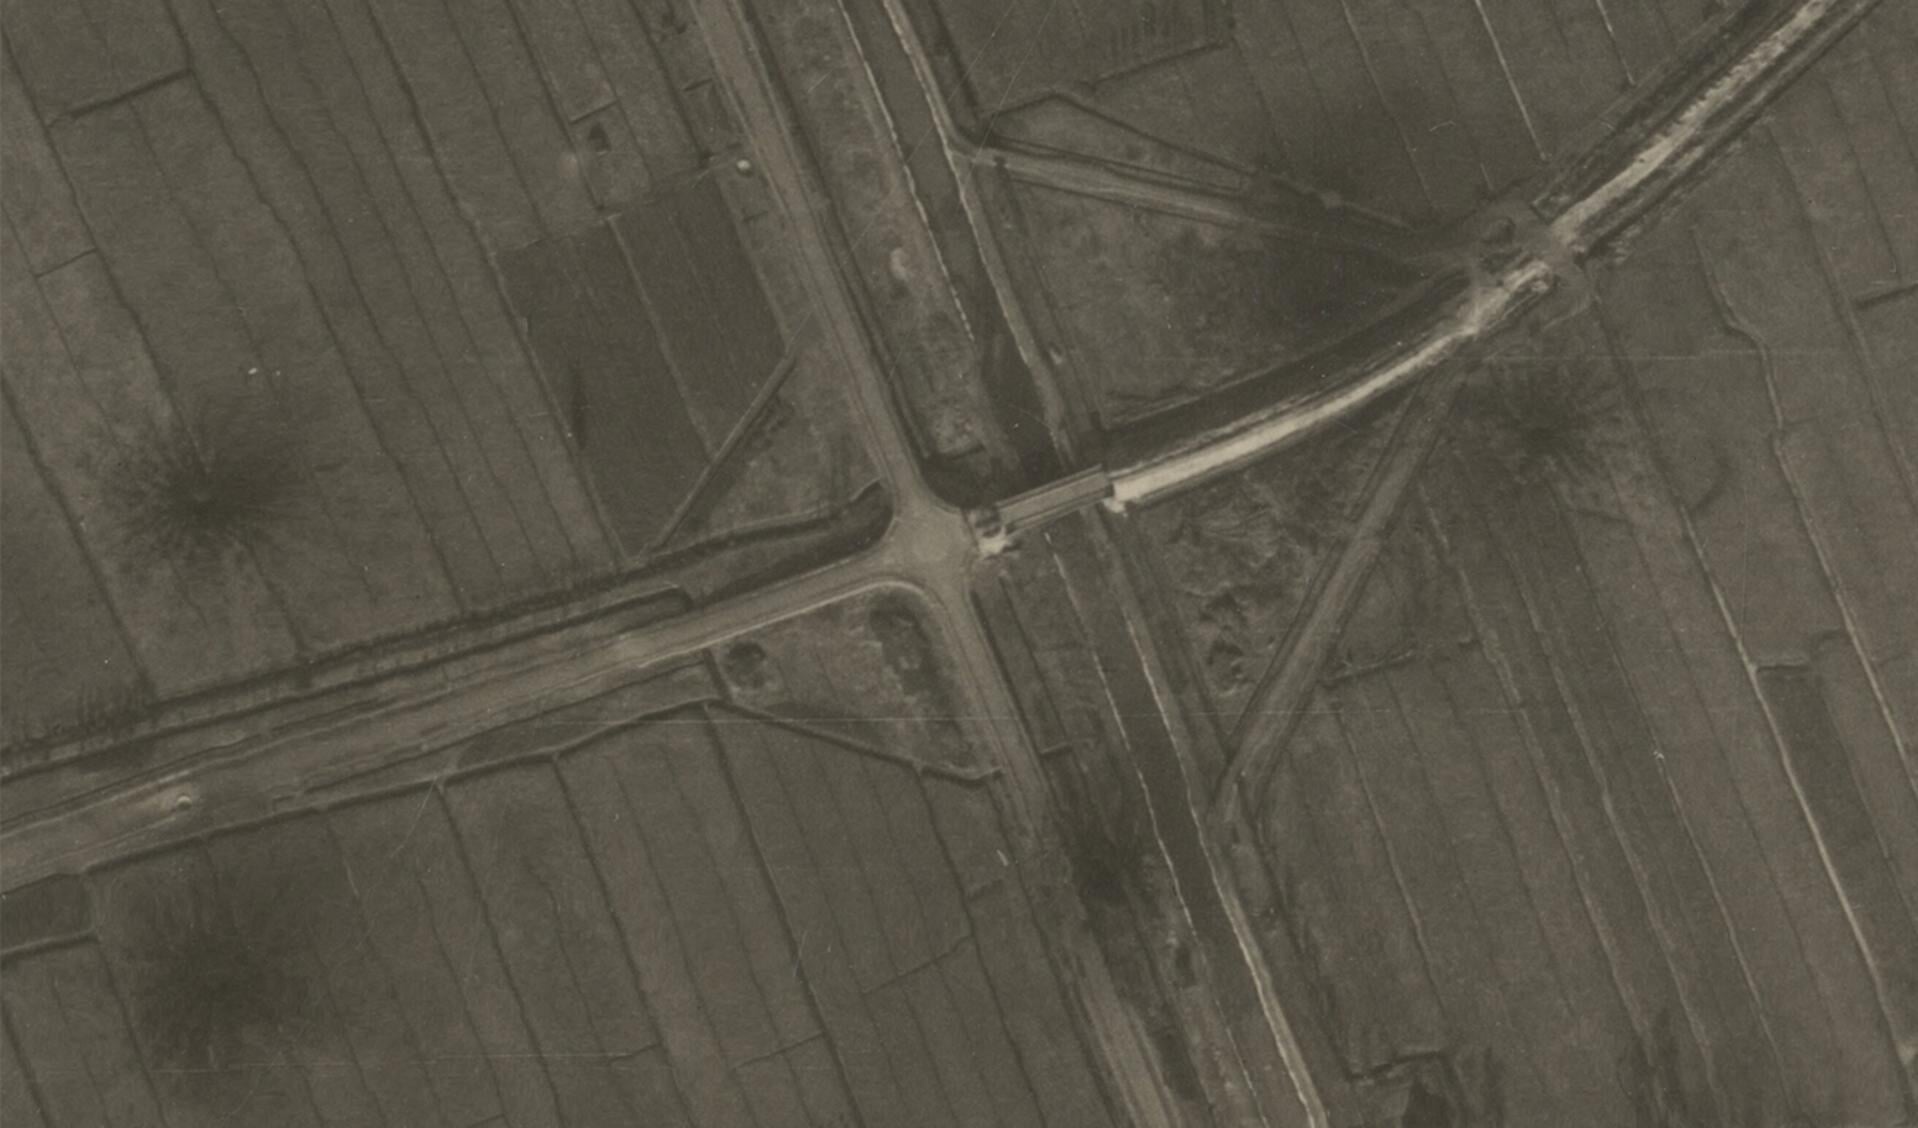 • Het kruispunt in 1945, met duidelijk zichtbaar de kraters van de bominslagen.